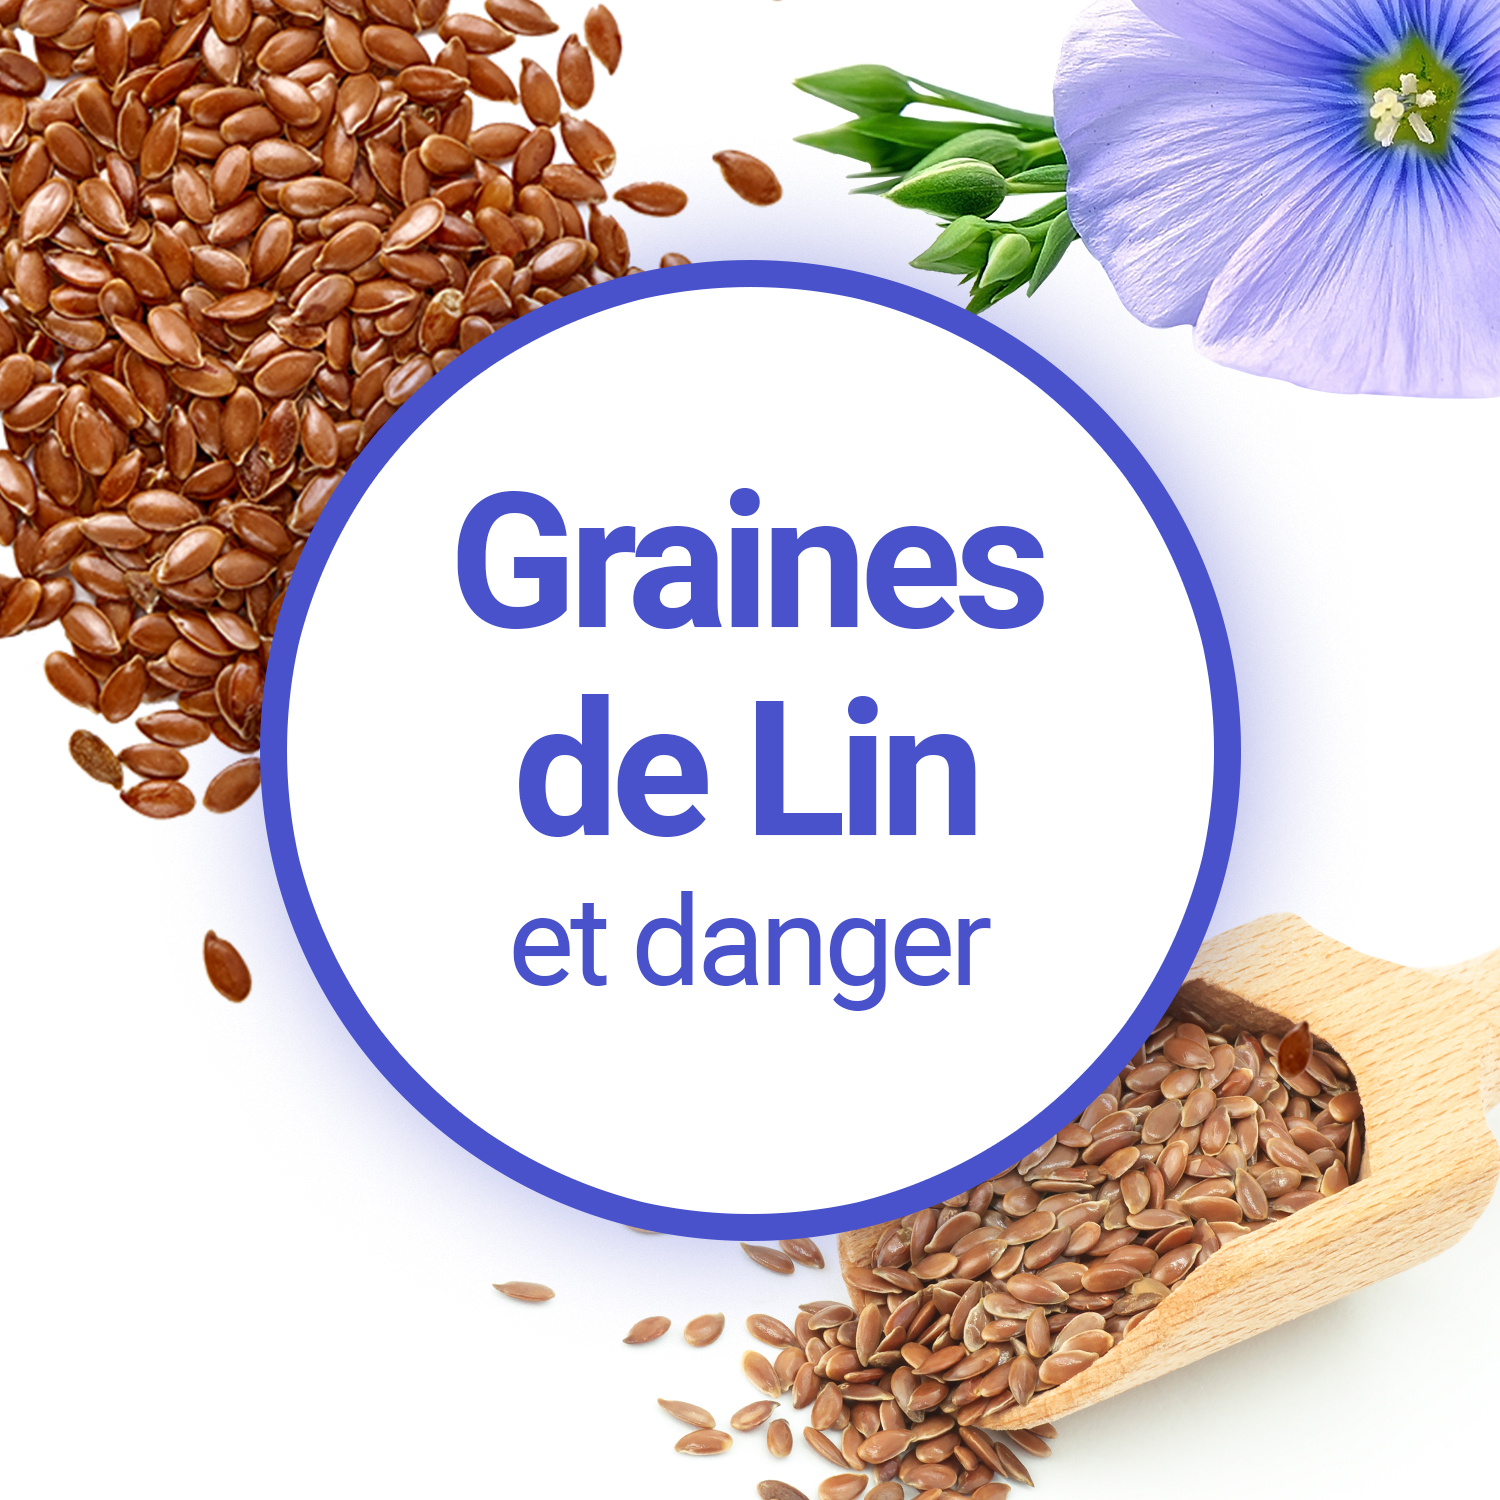 Grains de Lin (زريعة الكتان)